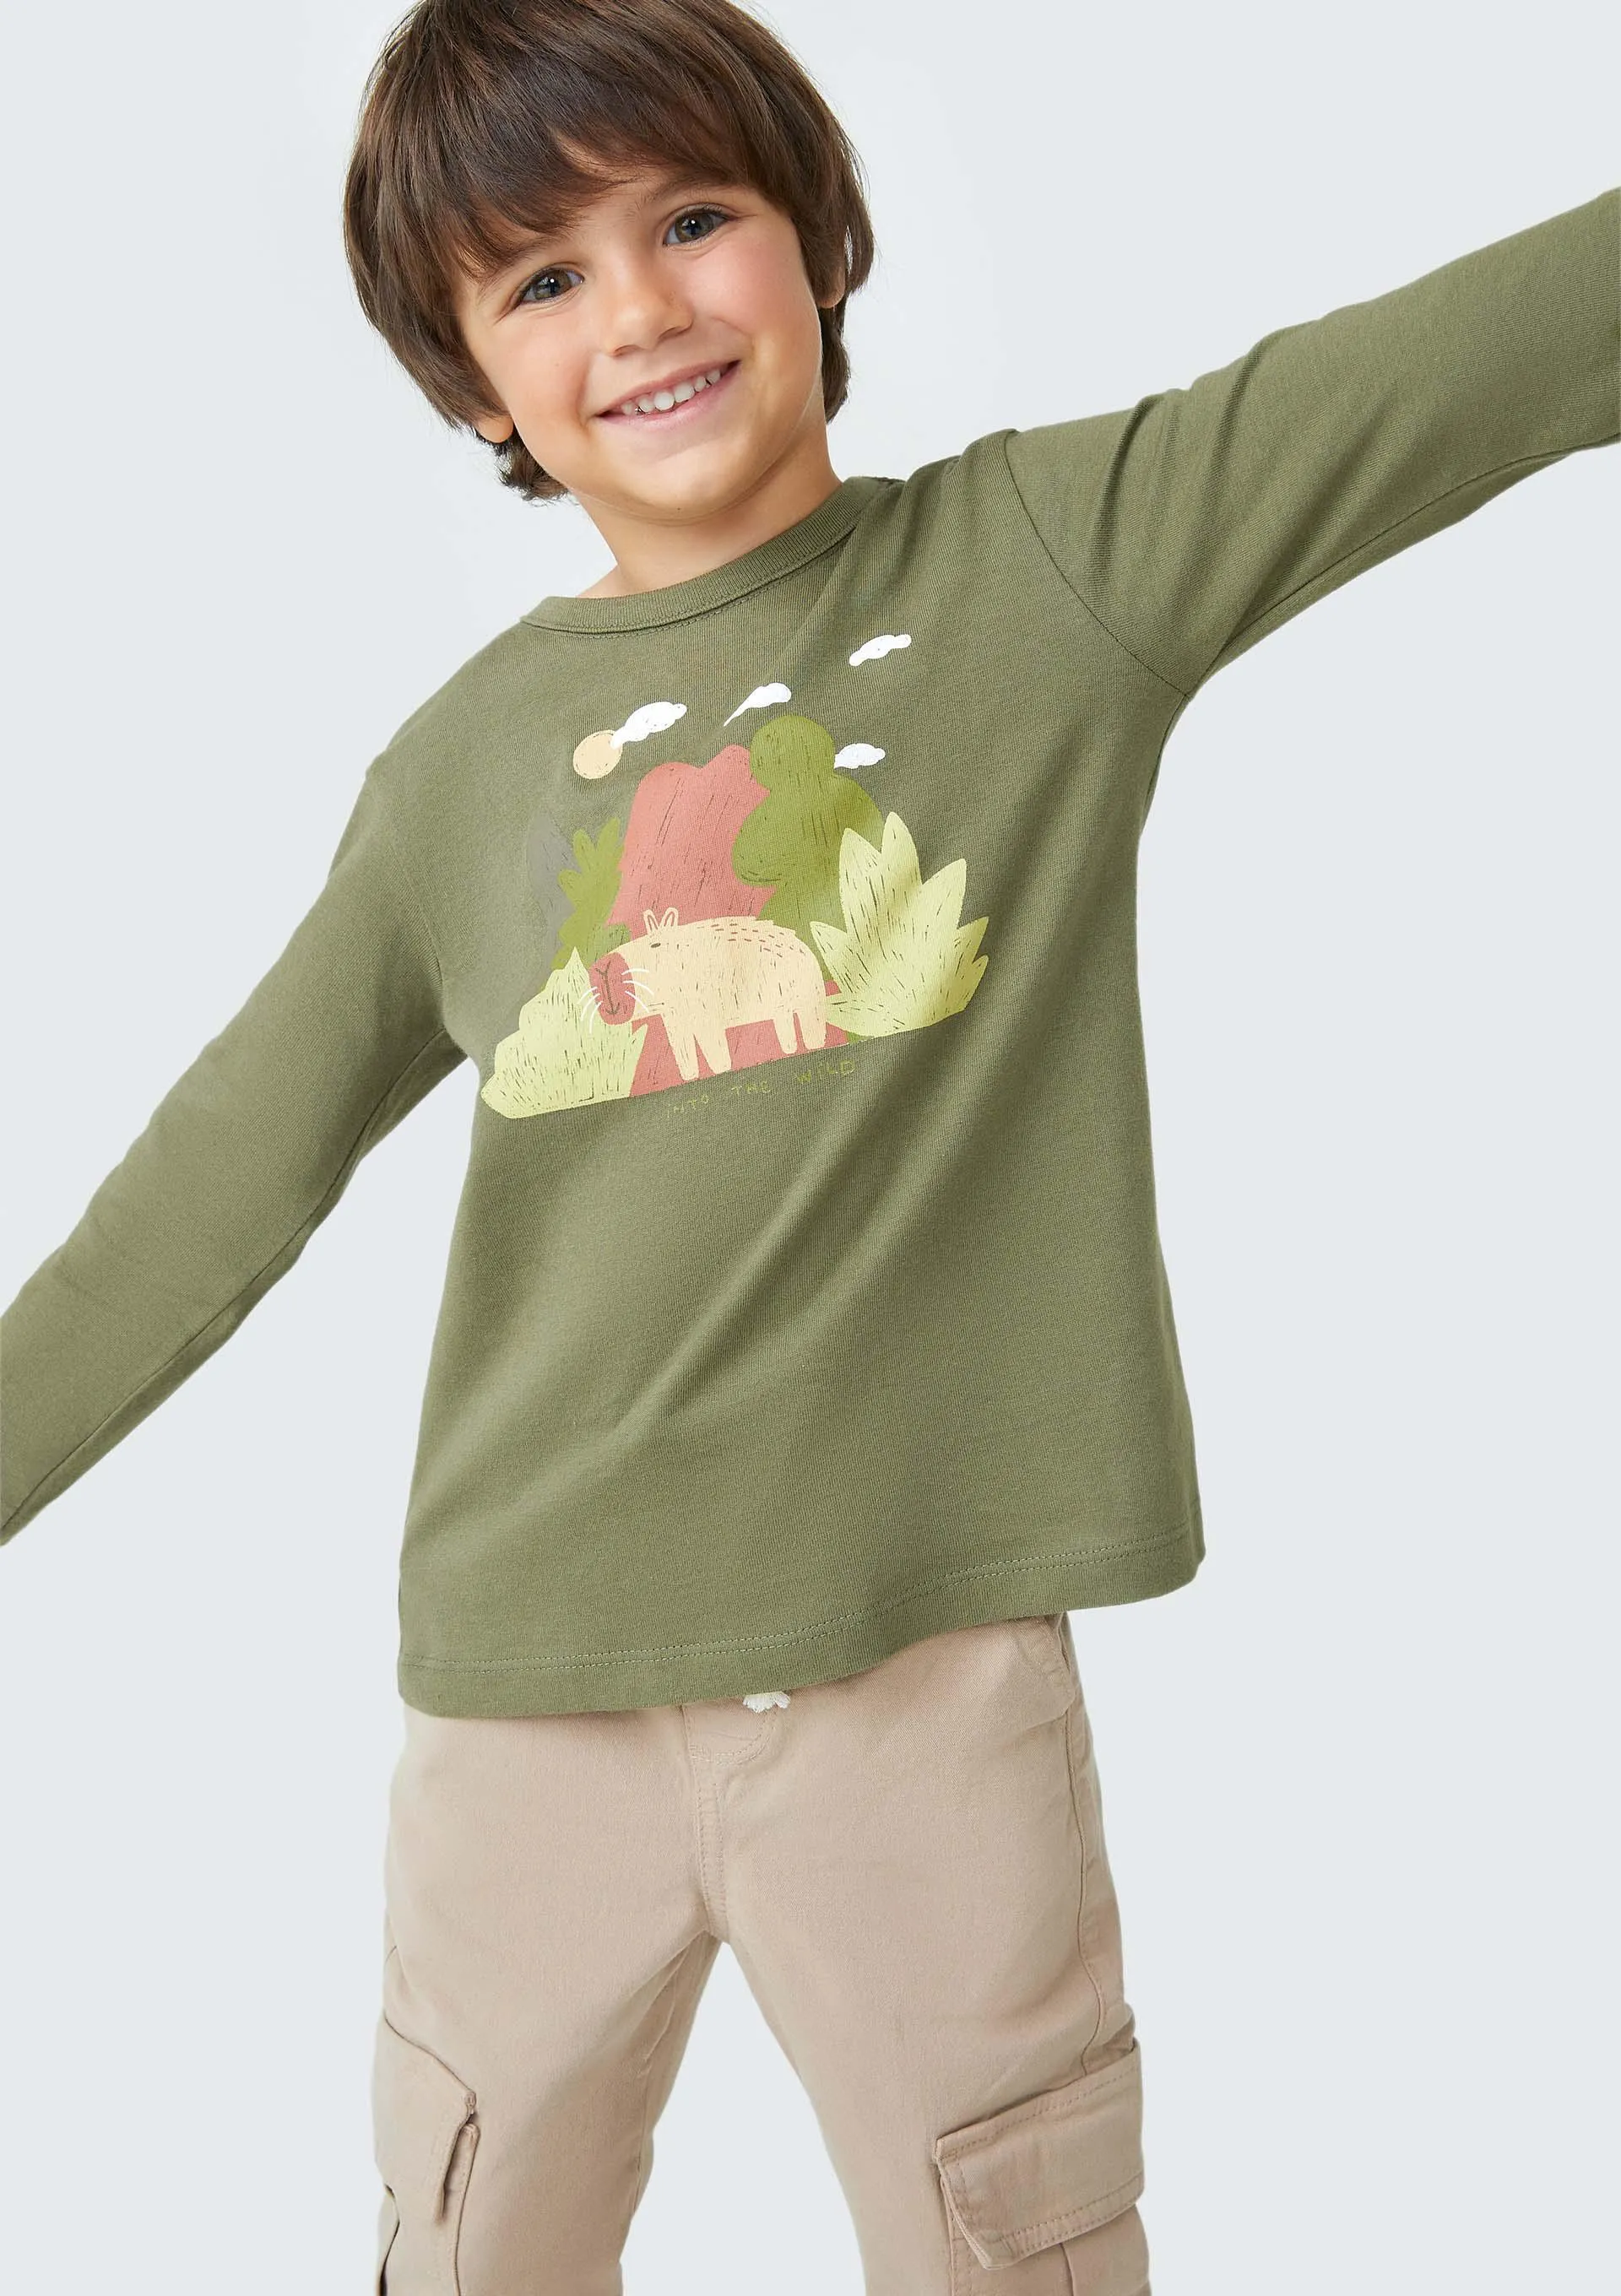 Camiseta Infantil Menino Toddler - Verde